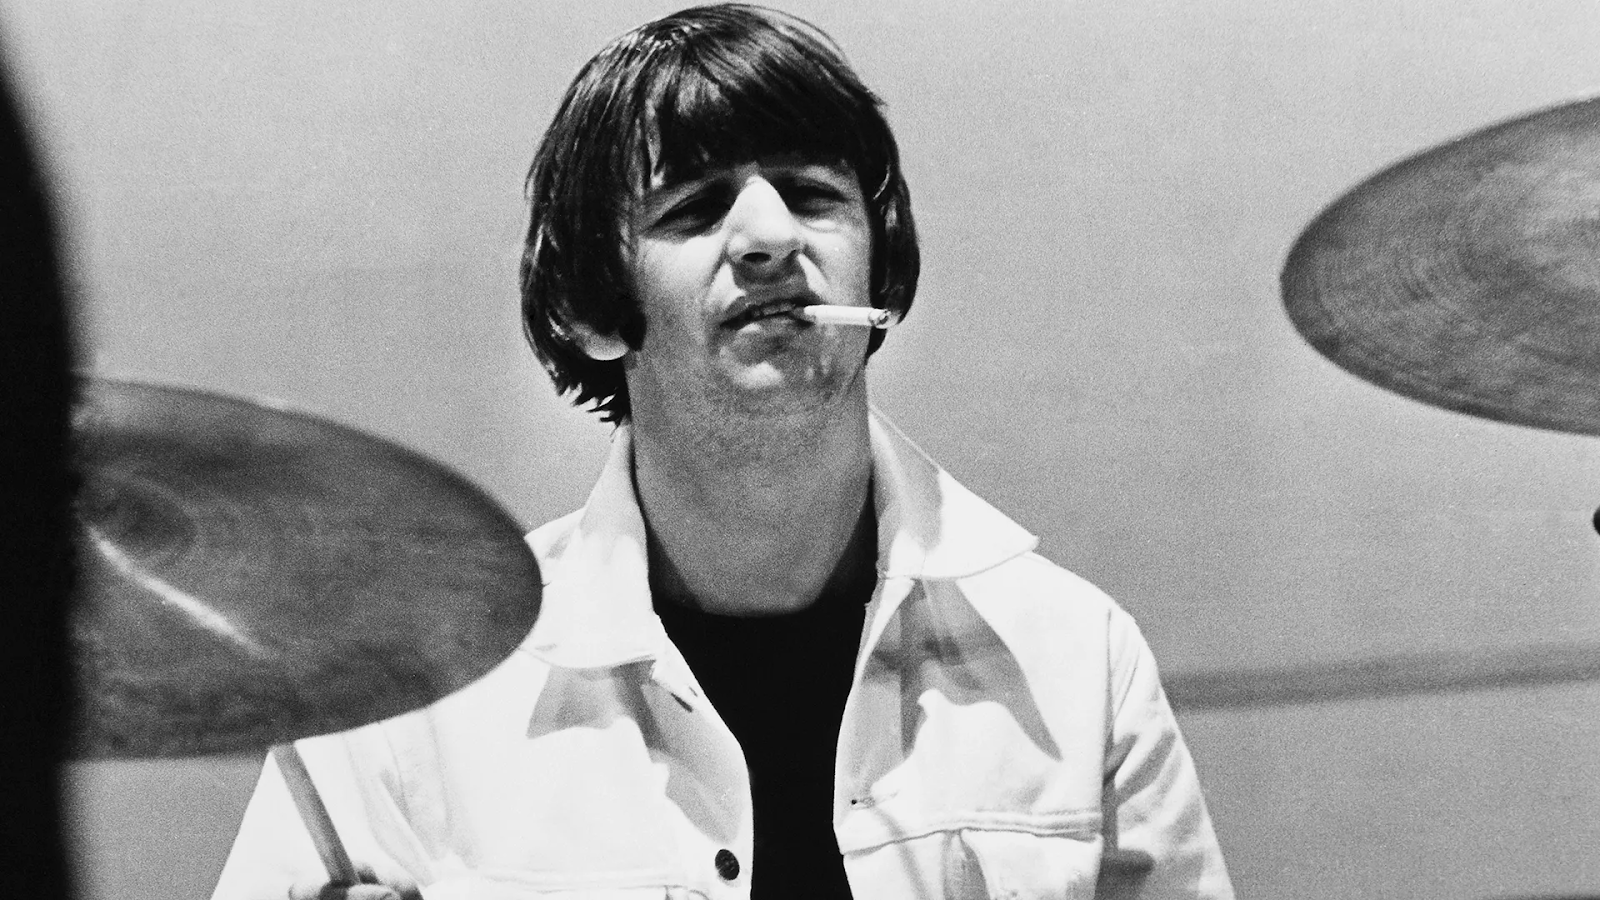 Imagem de conteúdo da notícia "Como Ringo Starr aprendeu a tocar bateria sem praticar" #1